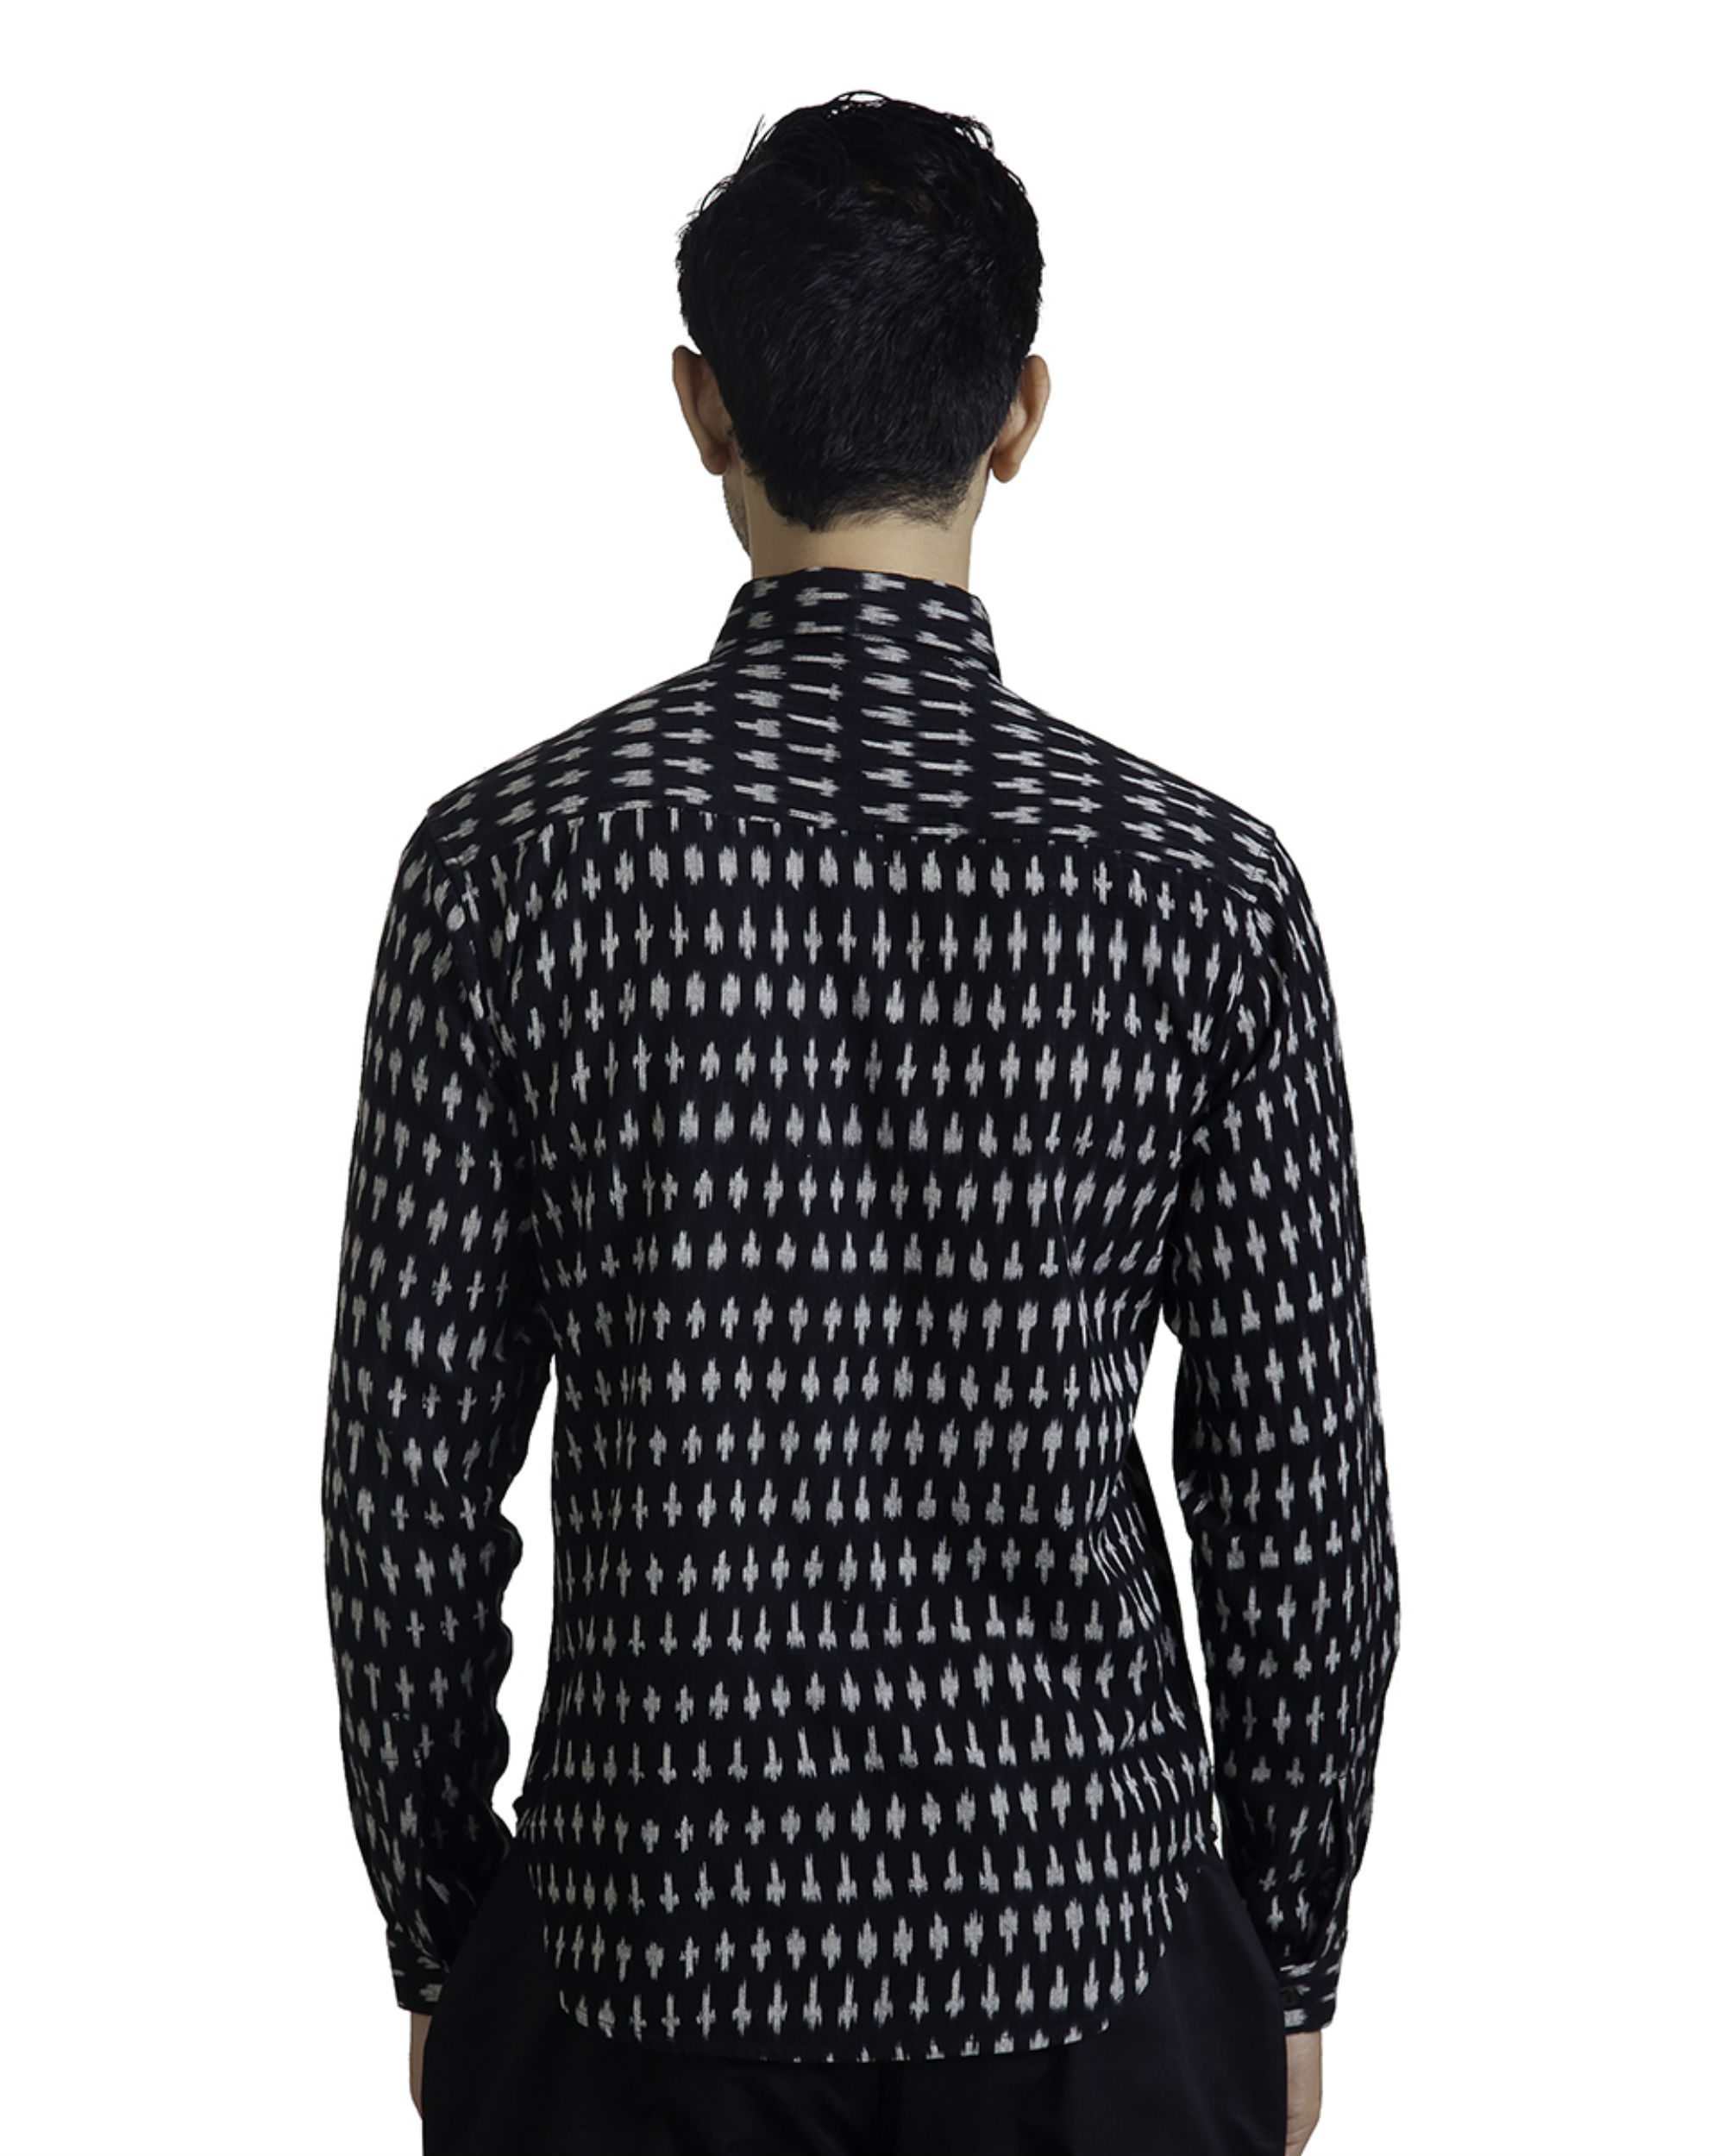 Black ikat button-down shirt by Dhatu Design Studio | The Secret Label